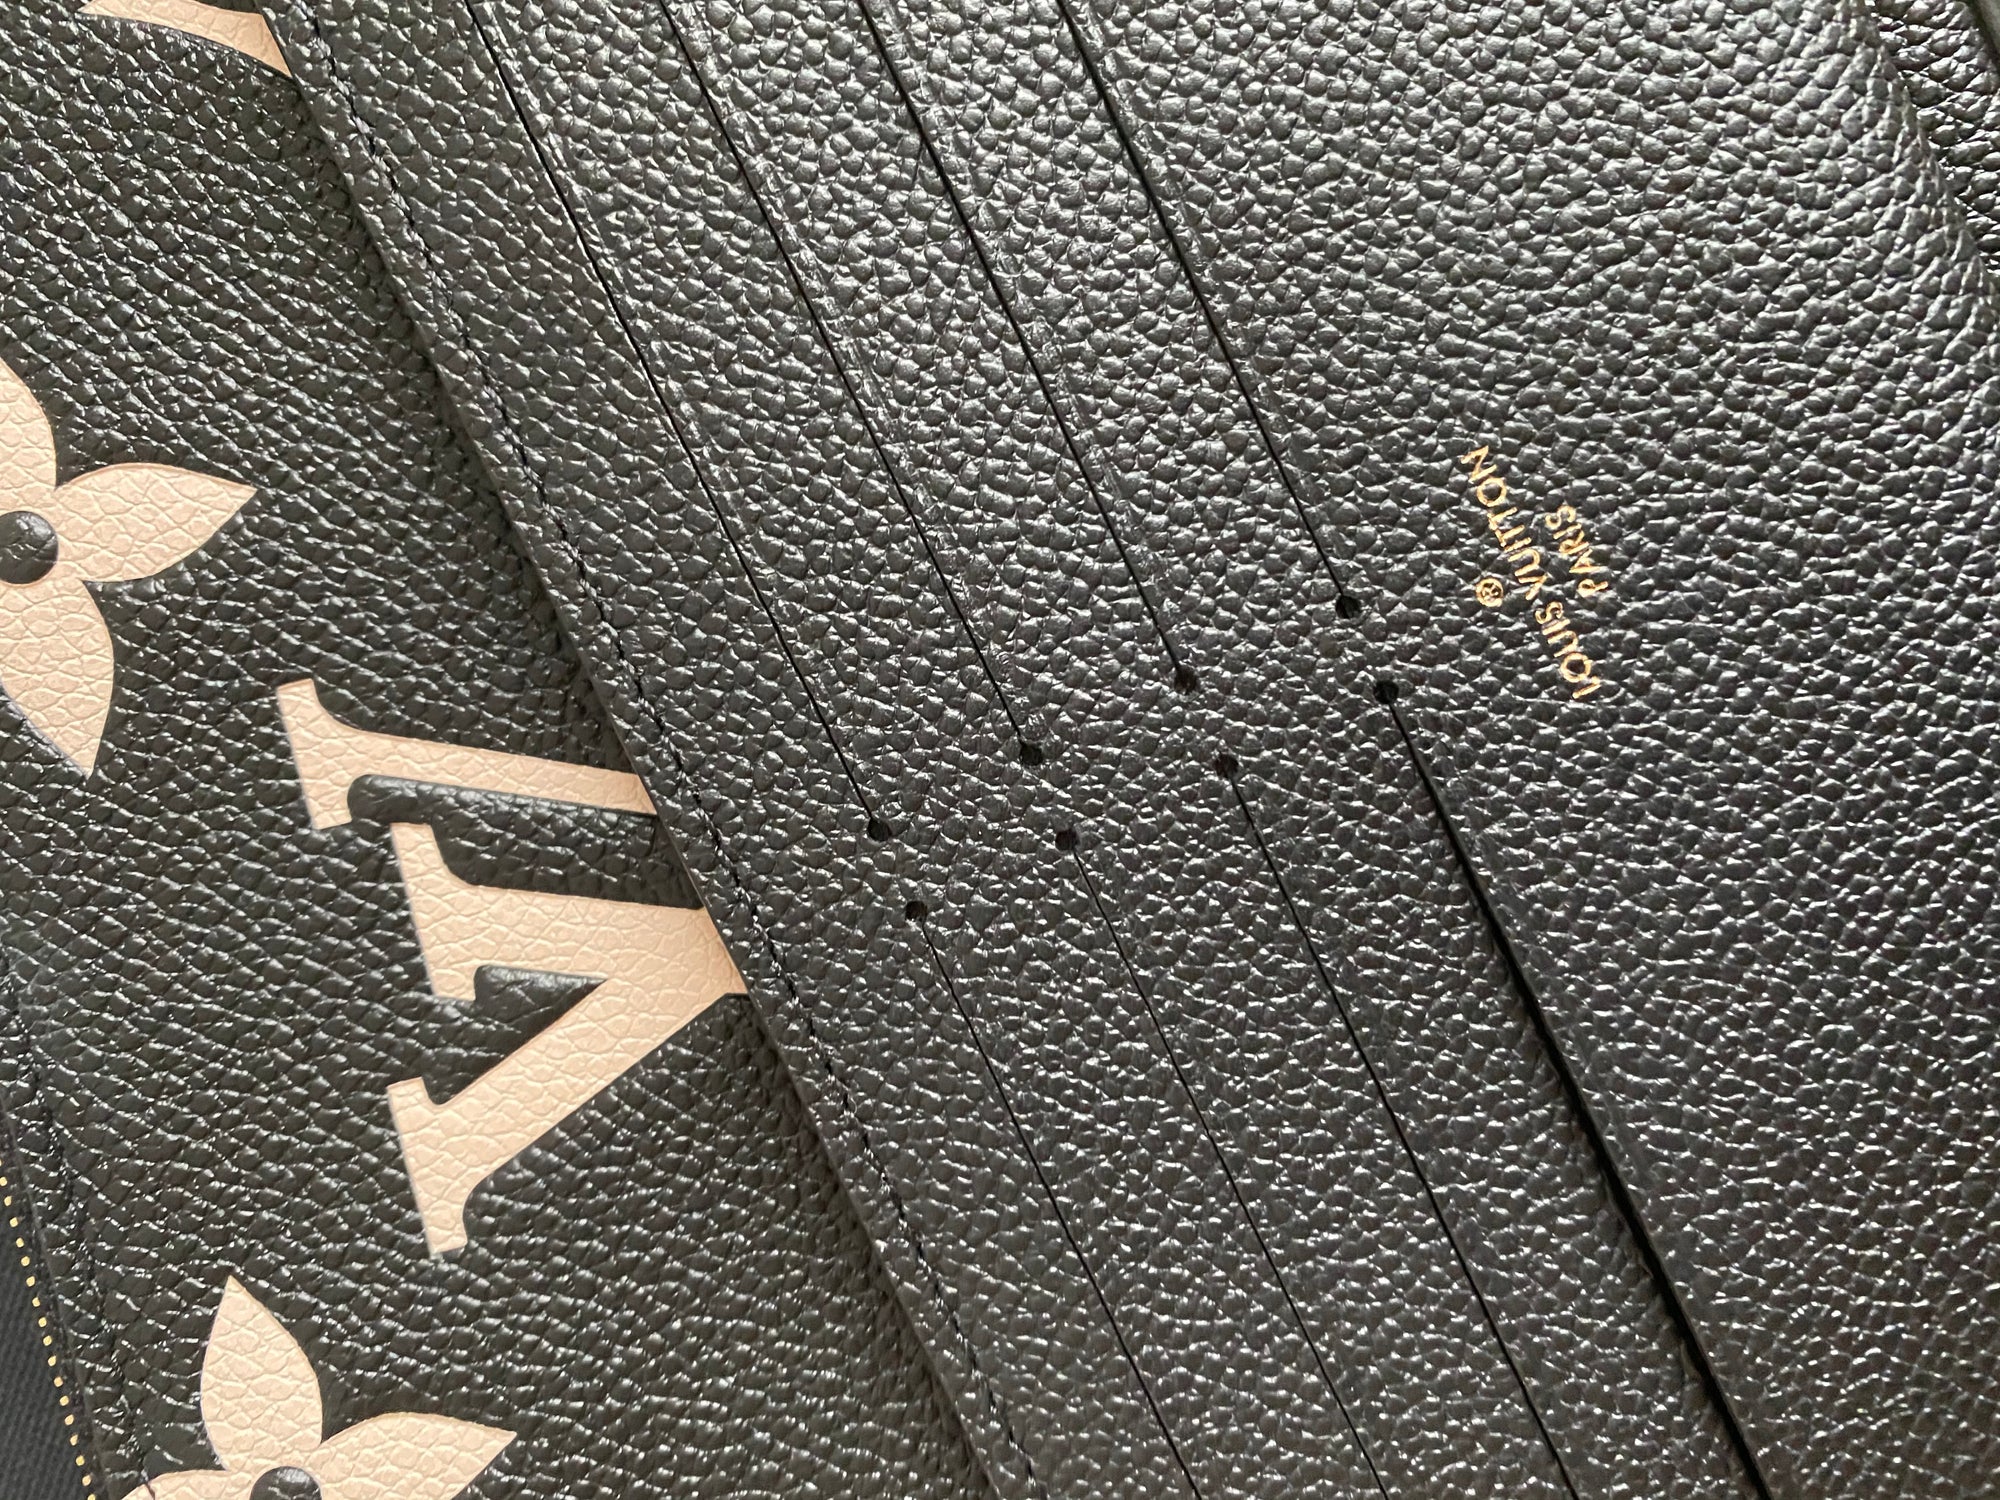 Louis Vuitton Empreinte Leather Crafty Felicie Pochette Wallet on